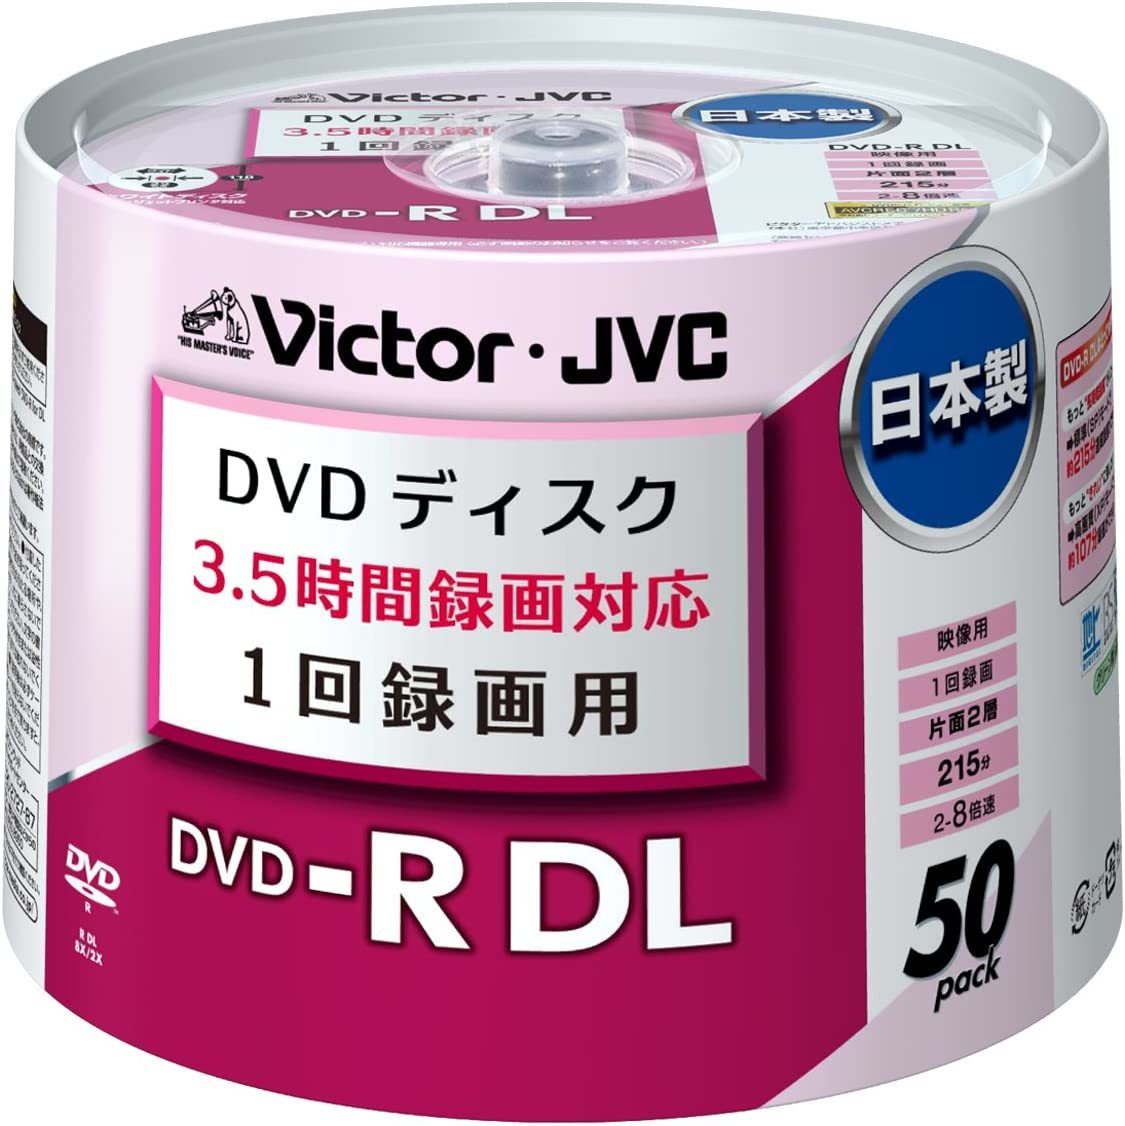 * бесплатная доставка * видеозапись для DVD-R одна сторона 2 слой CPRM соответствует 8 скоростей 8.5GB AVCREC/HD Rec соответствует сделано в Японии широкий белый принтер bru50 листов VD-R215AM50